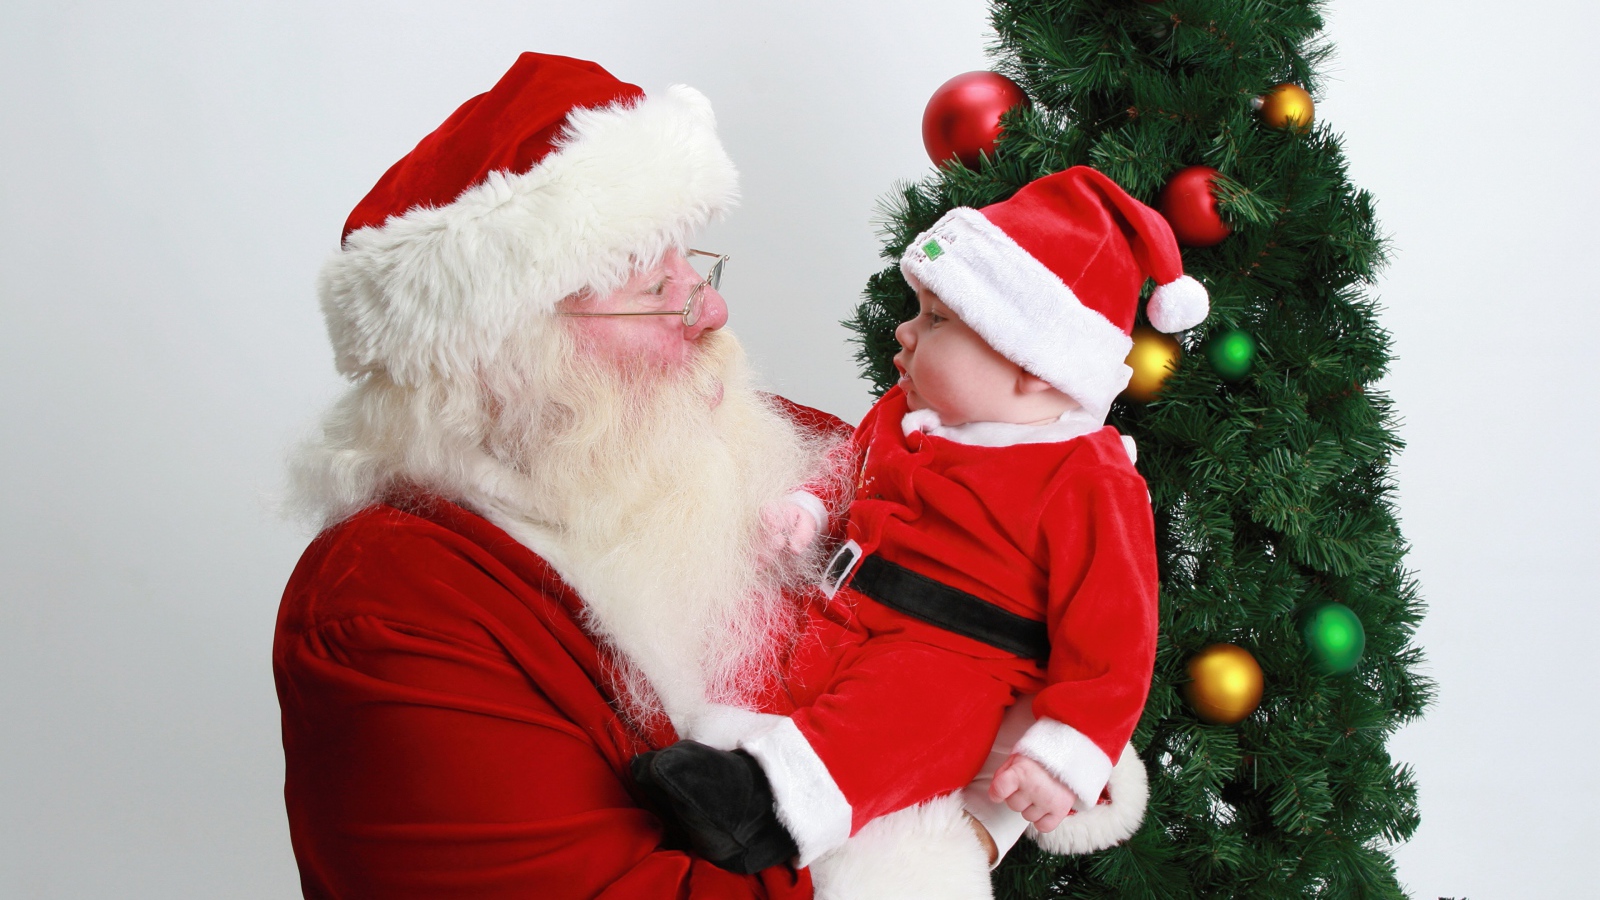 Дед Мороз держит на руках маленького ребенка у елки